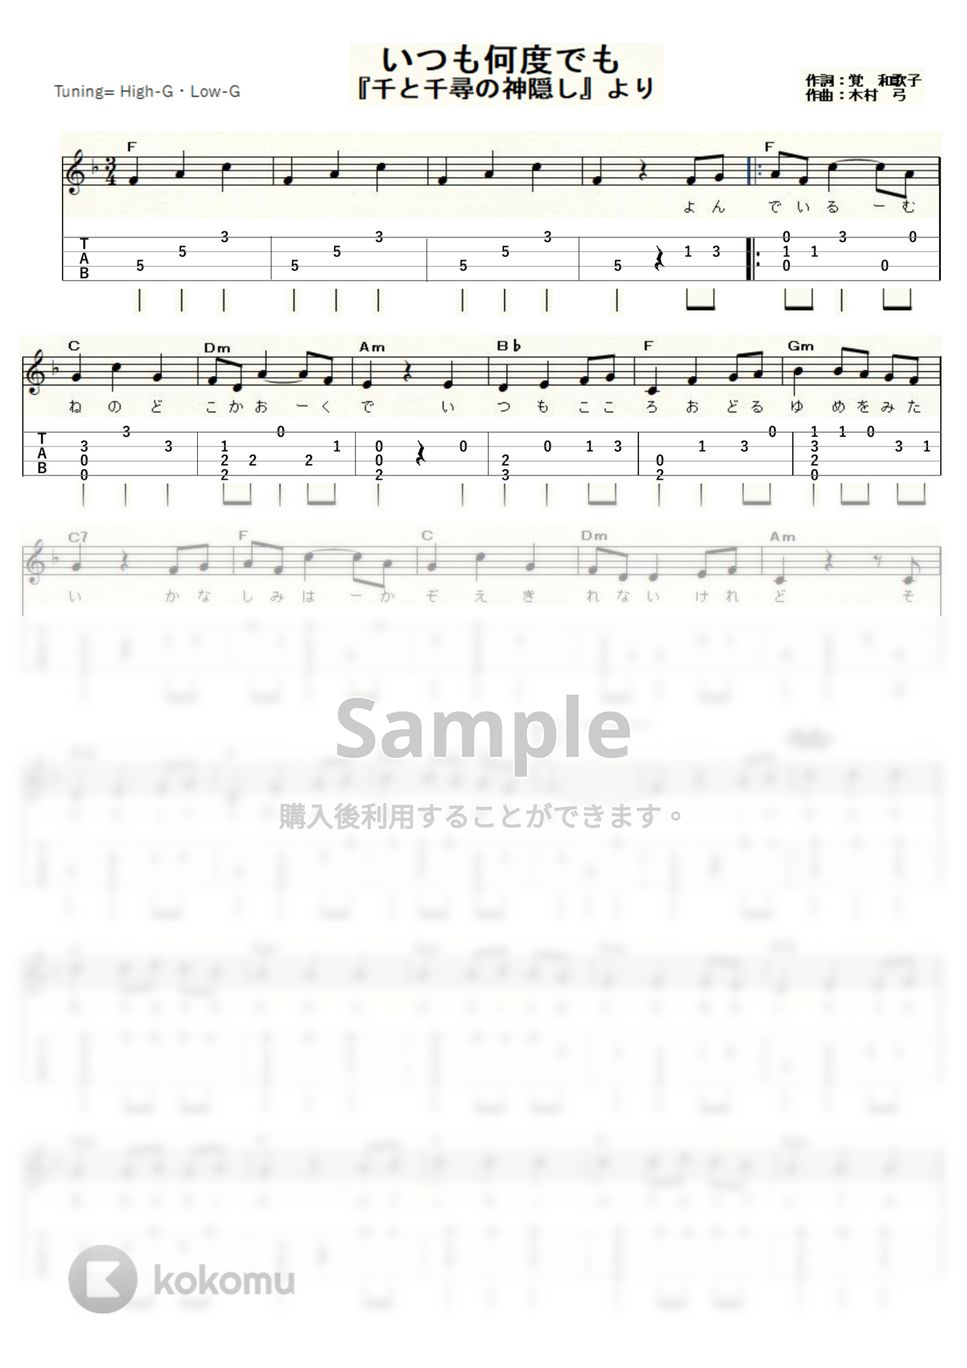 木村弓 - いつも何度でも～千と千尋の神隠し～ (ｳｸﾚﾚｿﾛ / High-G,Low-G / 初～中級) by ukulelepapa